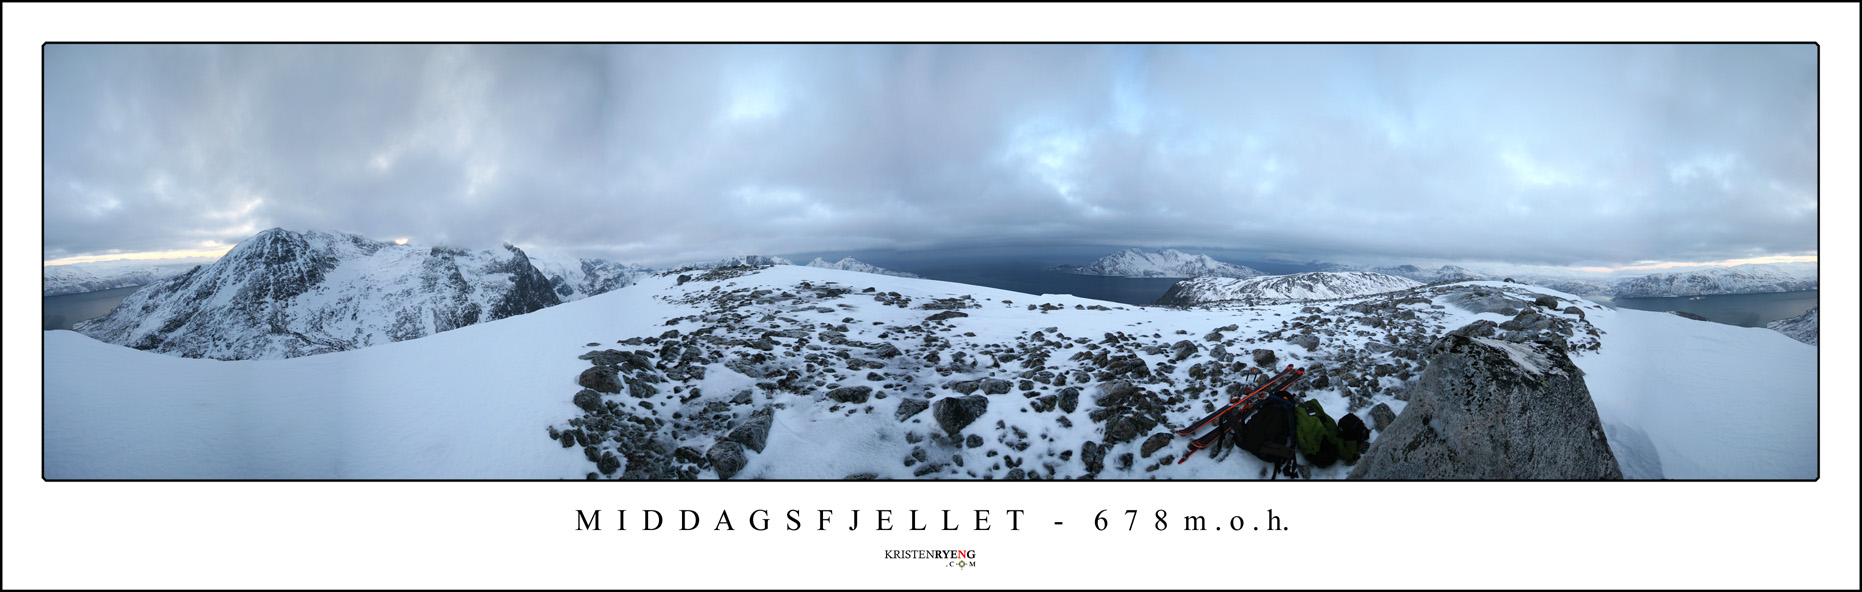 Panorama-Middagsfjellet.jpg - Middagsfjellet - 678 moh (Kvaløya)